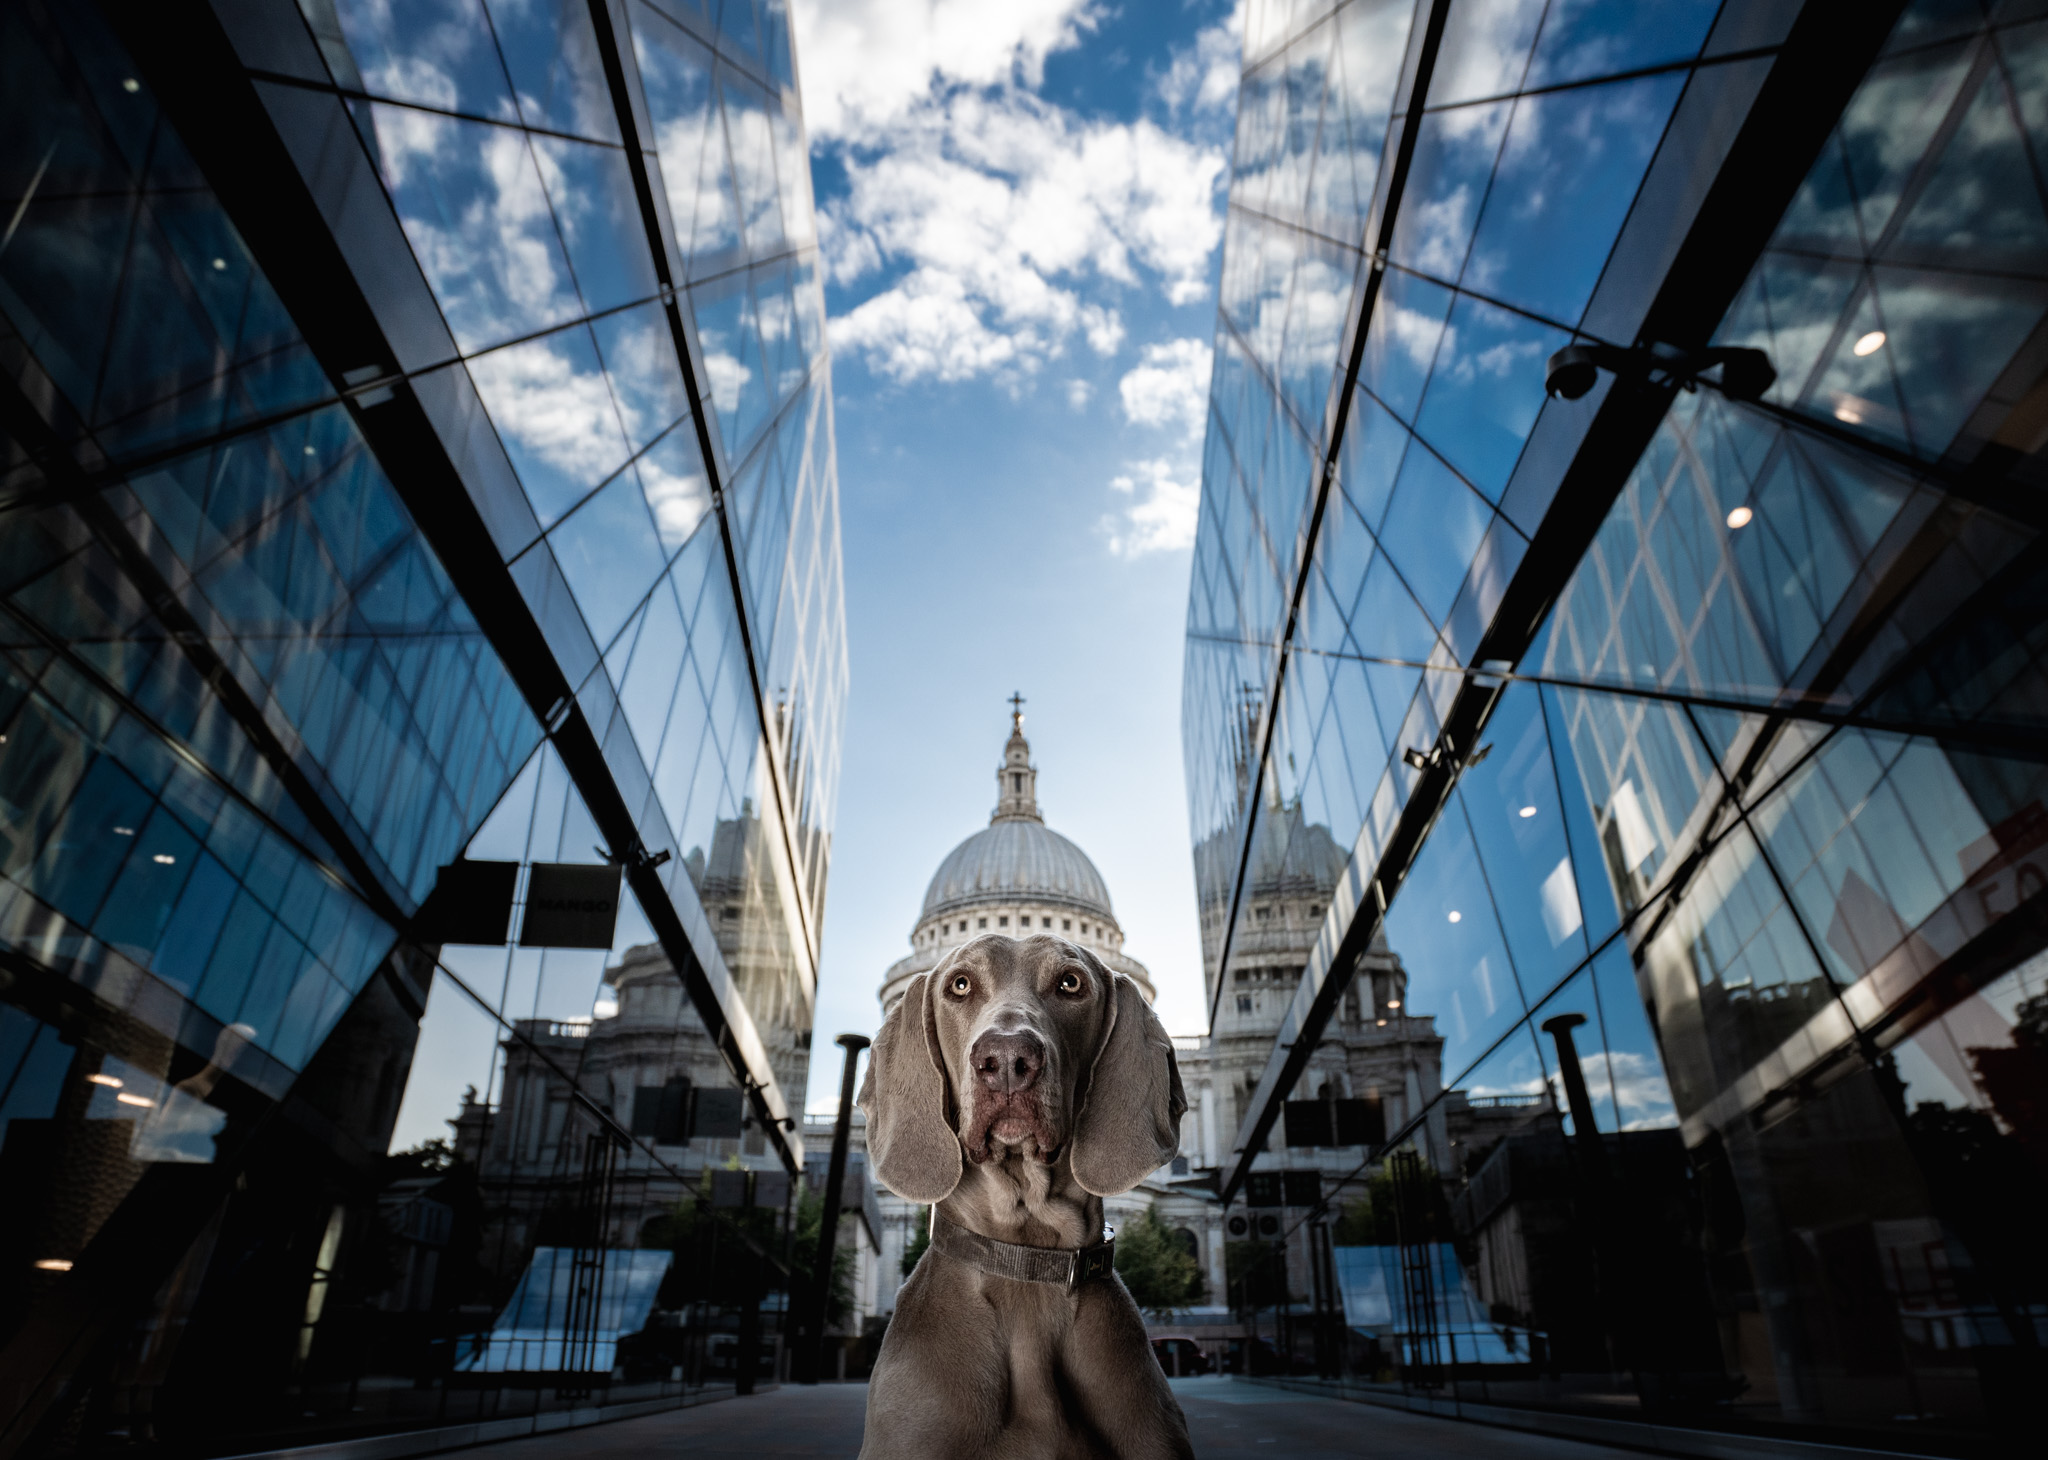 Fotografija 'Saint Paul's Cap', autora Alexa Classa snimljena u Londonu. 